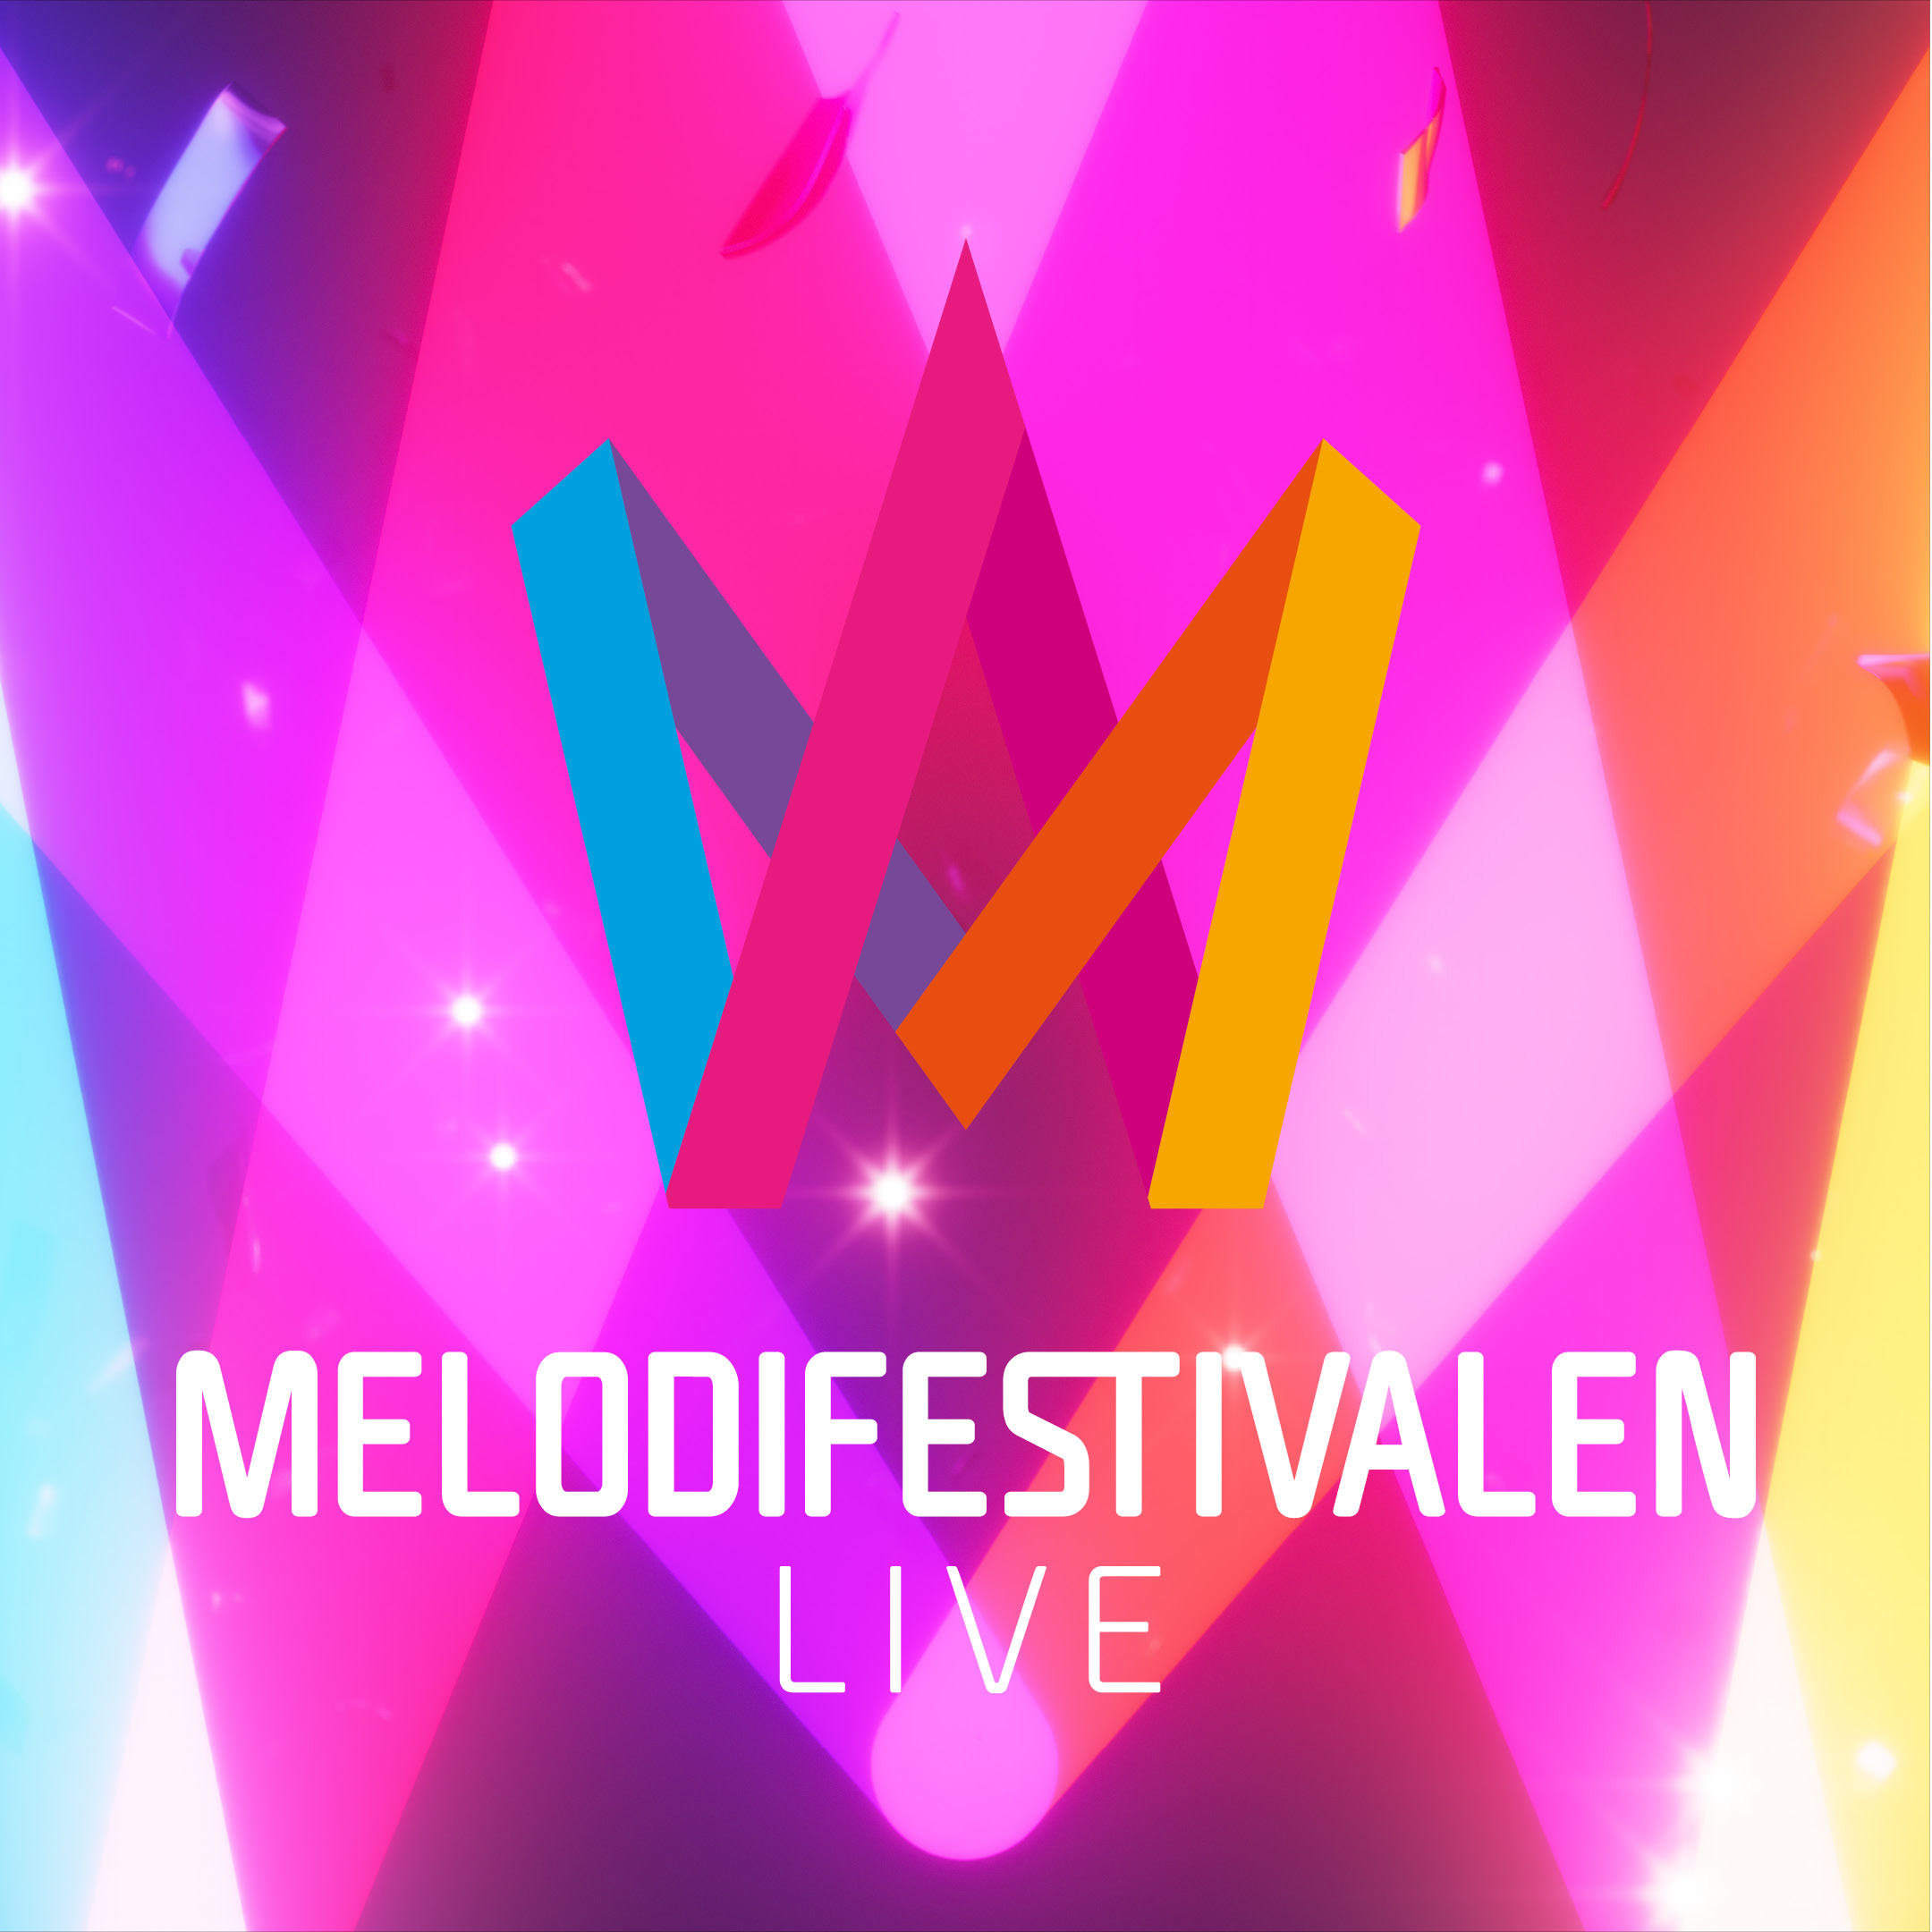 Melodifestivalen live - evangemang i malmö